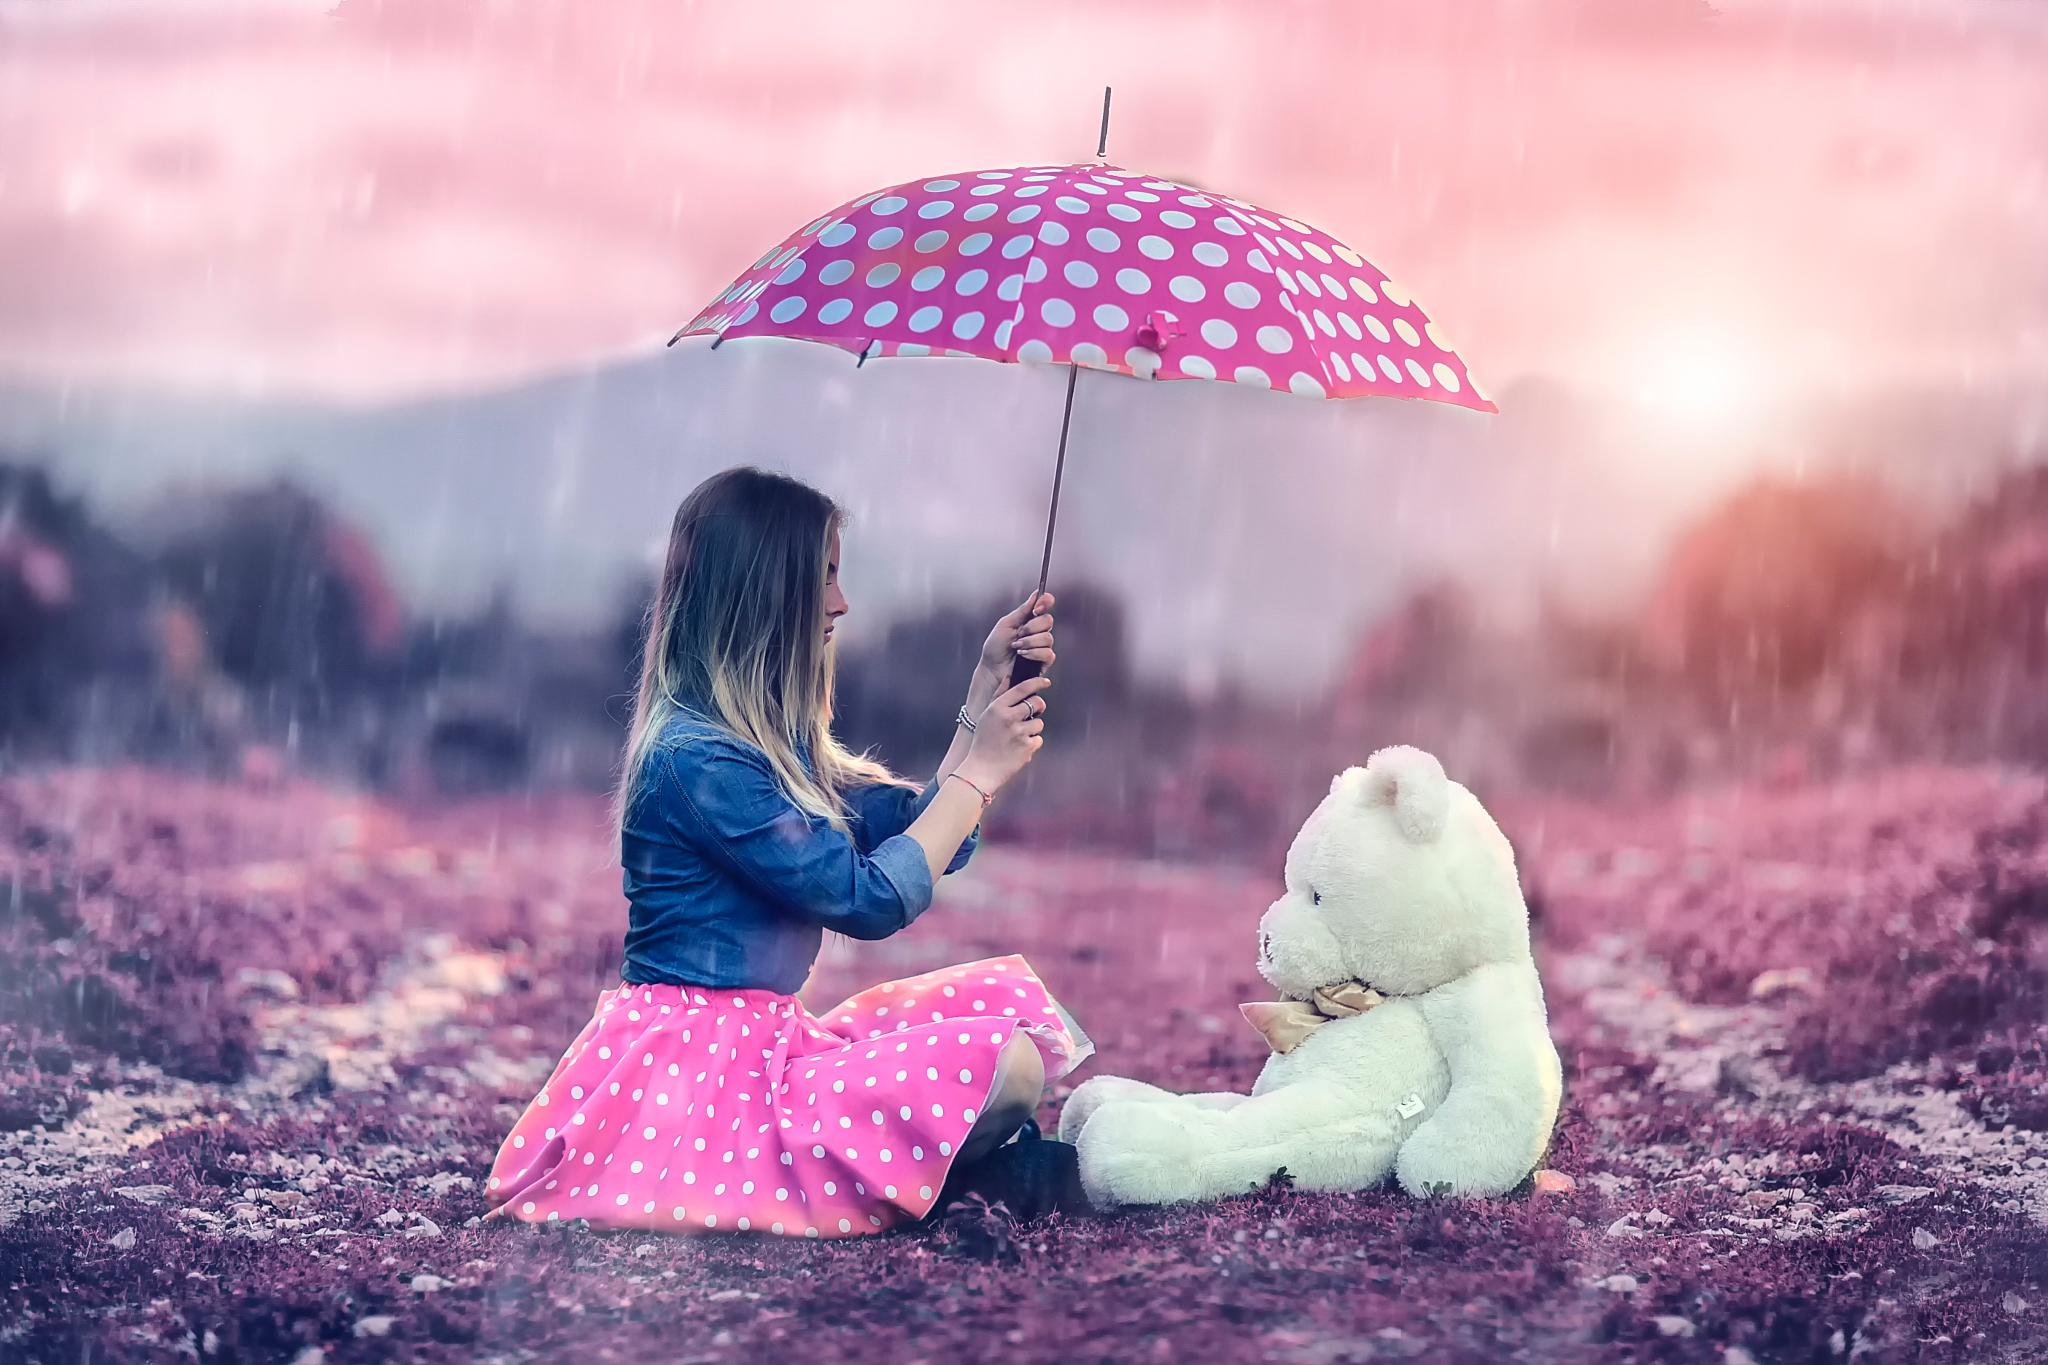 Картинки на ватсап красивые. Девушка с зонтом. Девочка с мишкой под дождем. Игрушки для девочек. Красивые картинки на аву.